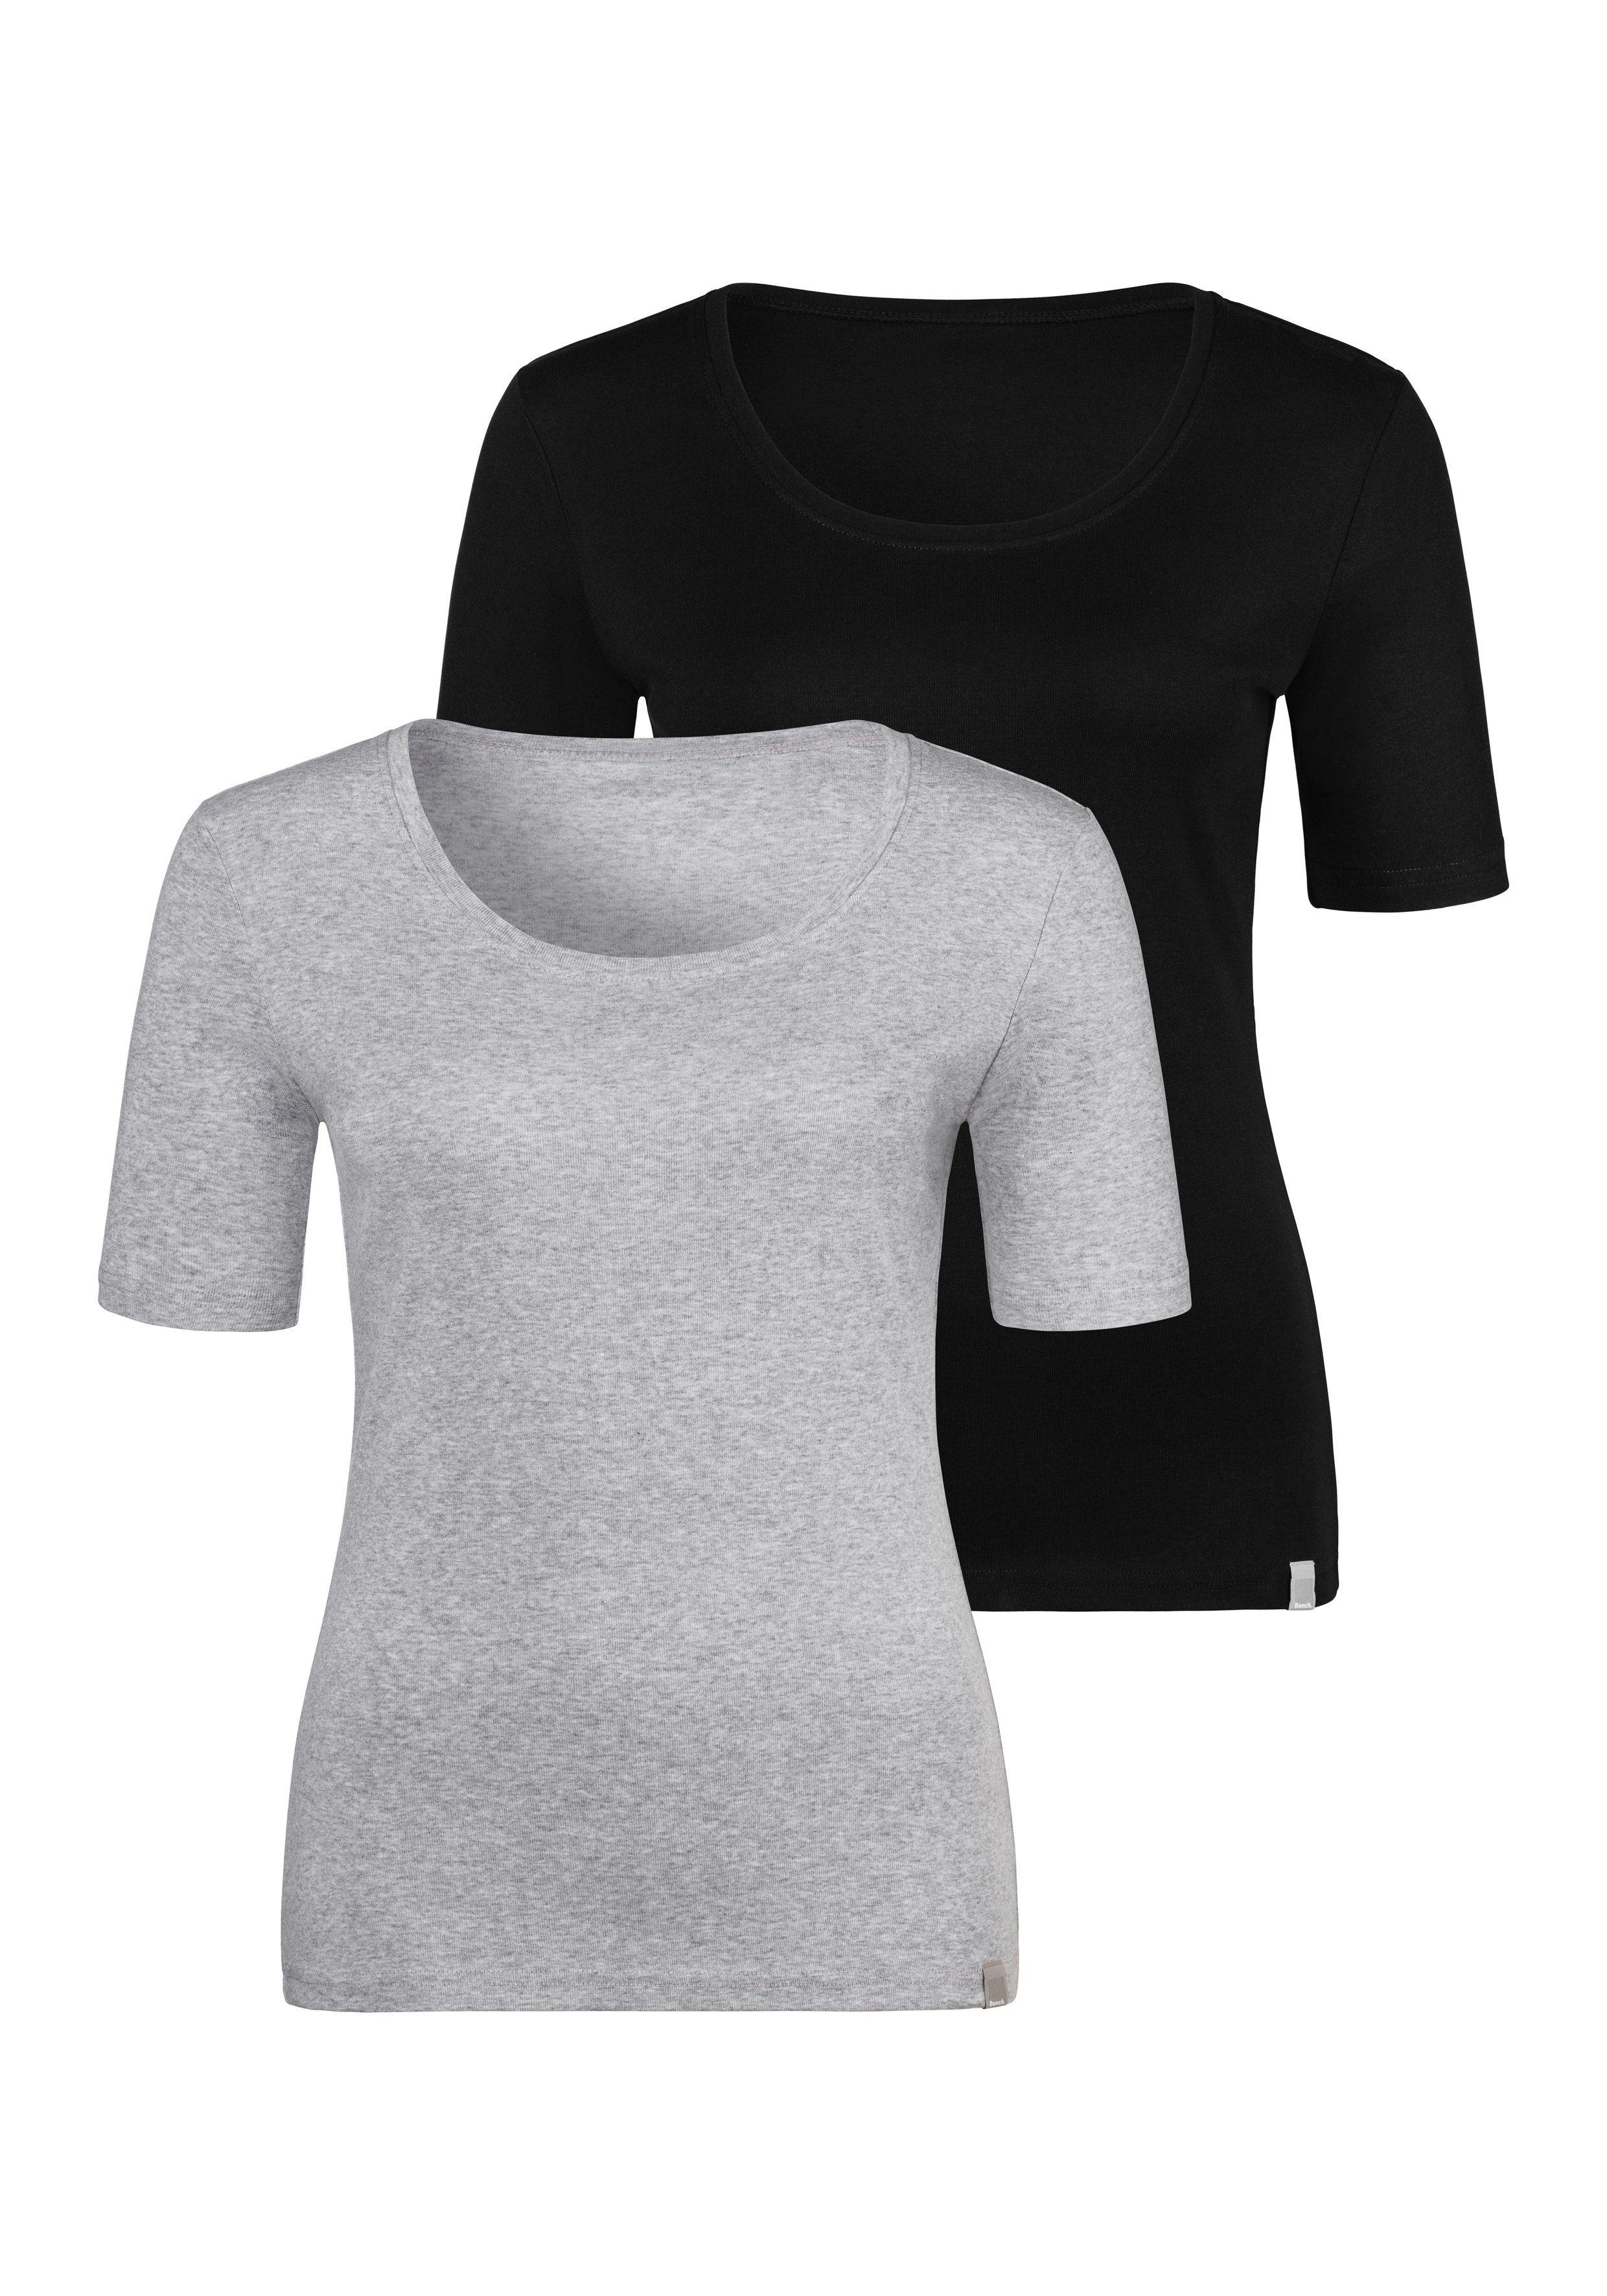 T-Shirt Unterziehshirt weicher (2er-Pack) aus Feinripp-Qualität, grau-meliert schwarz, Bench.